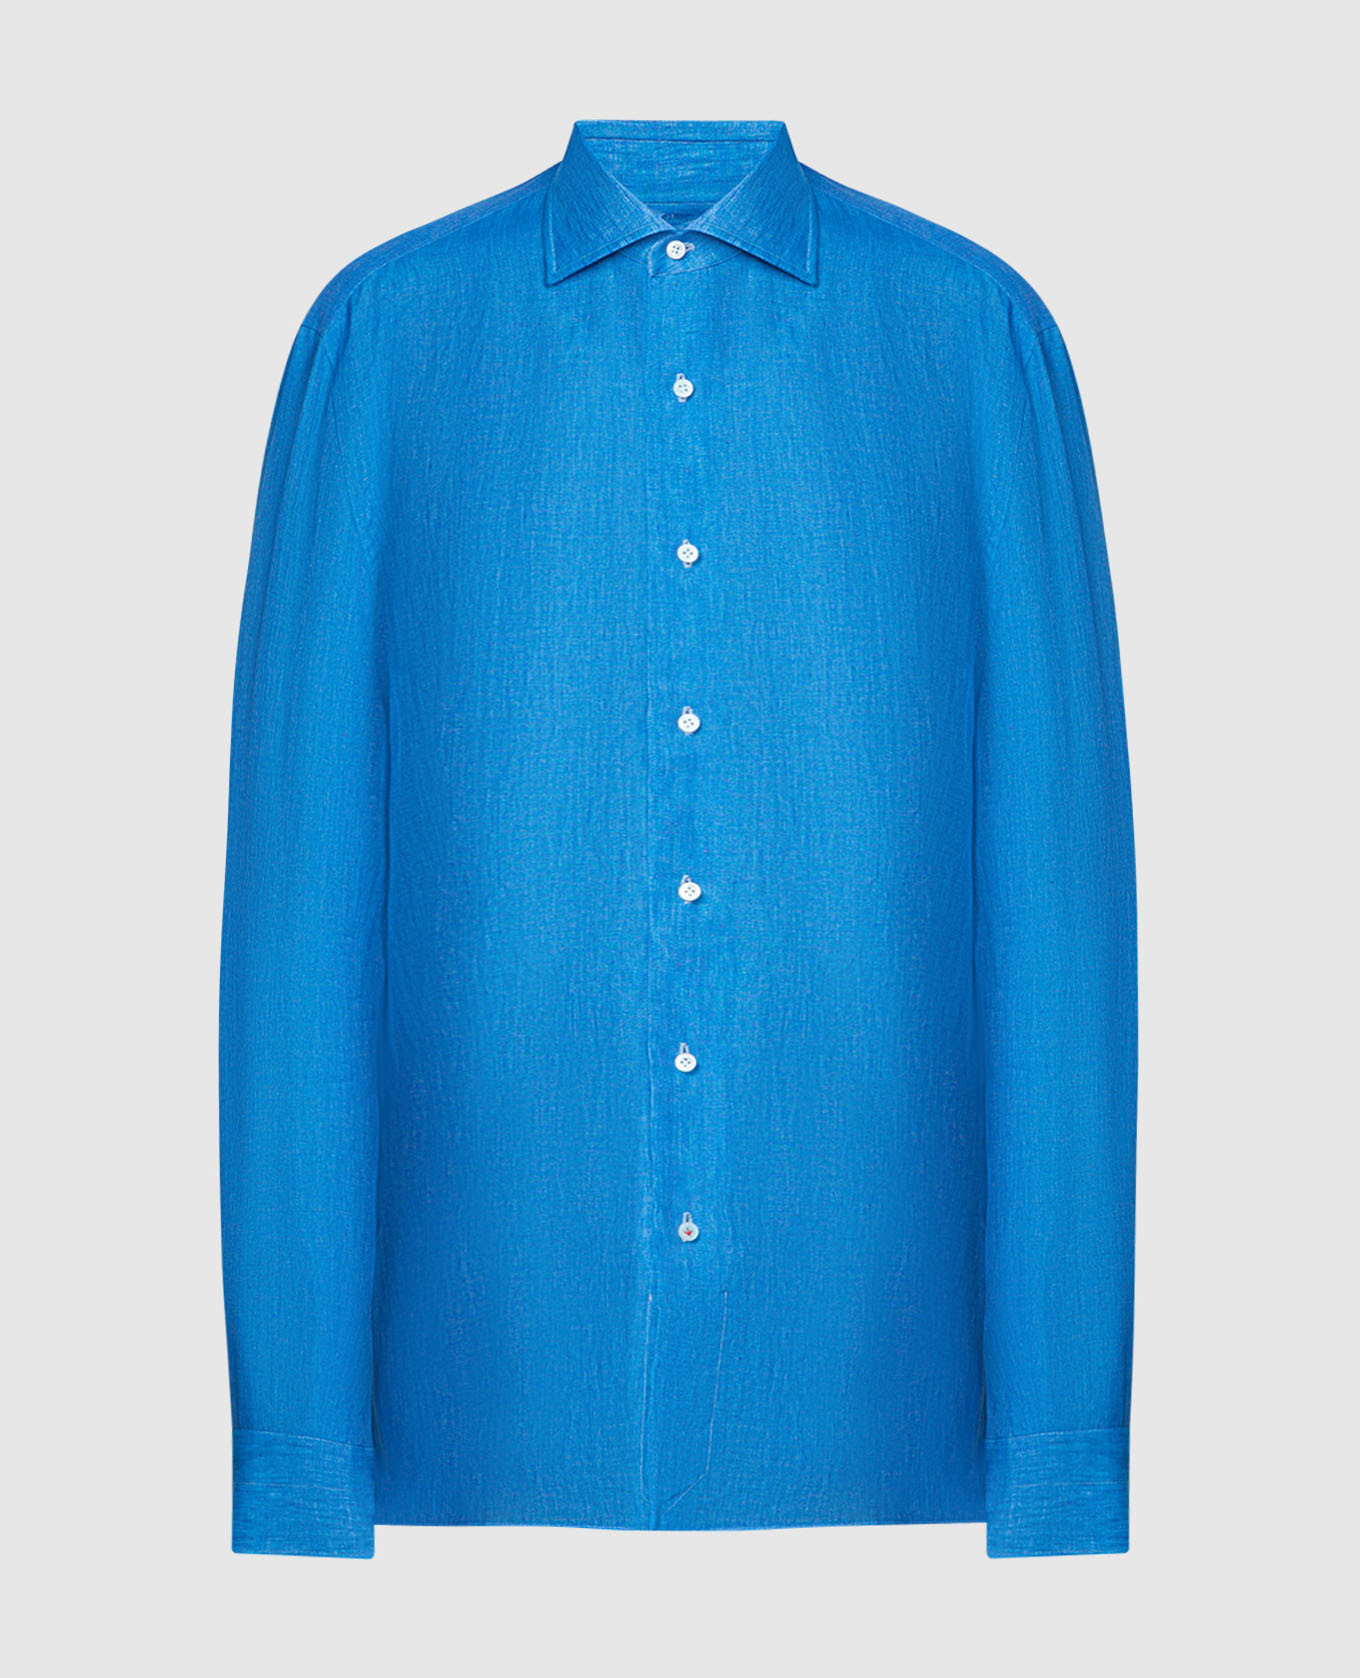 Blue linen shirt